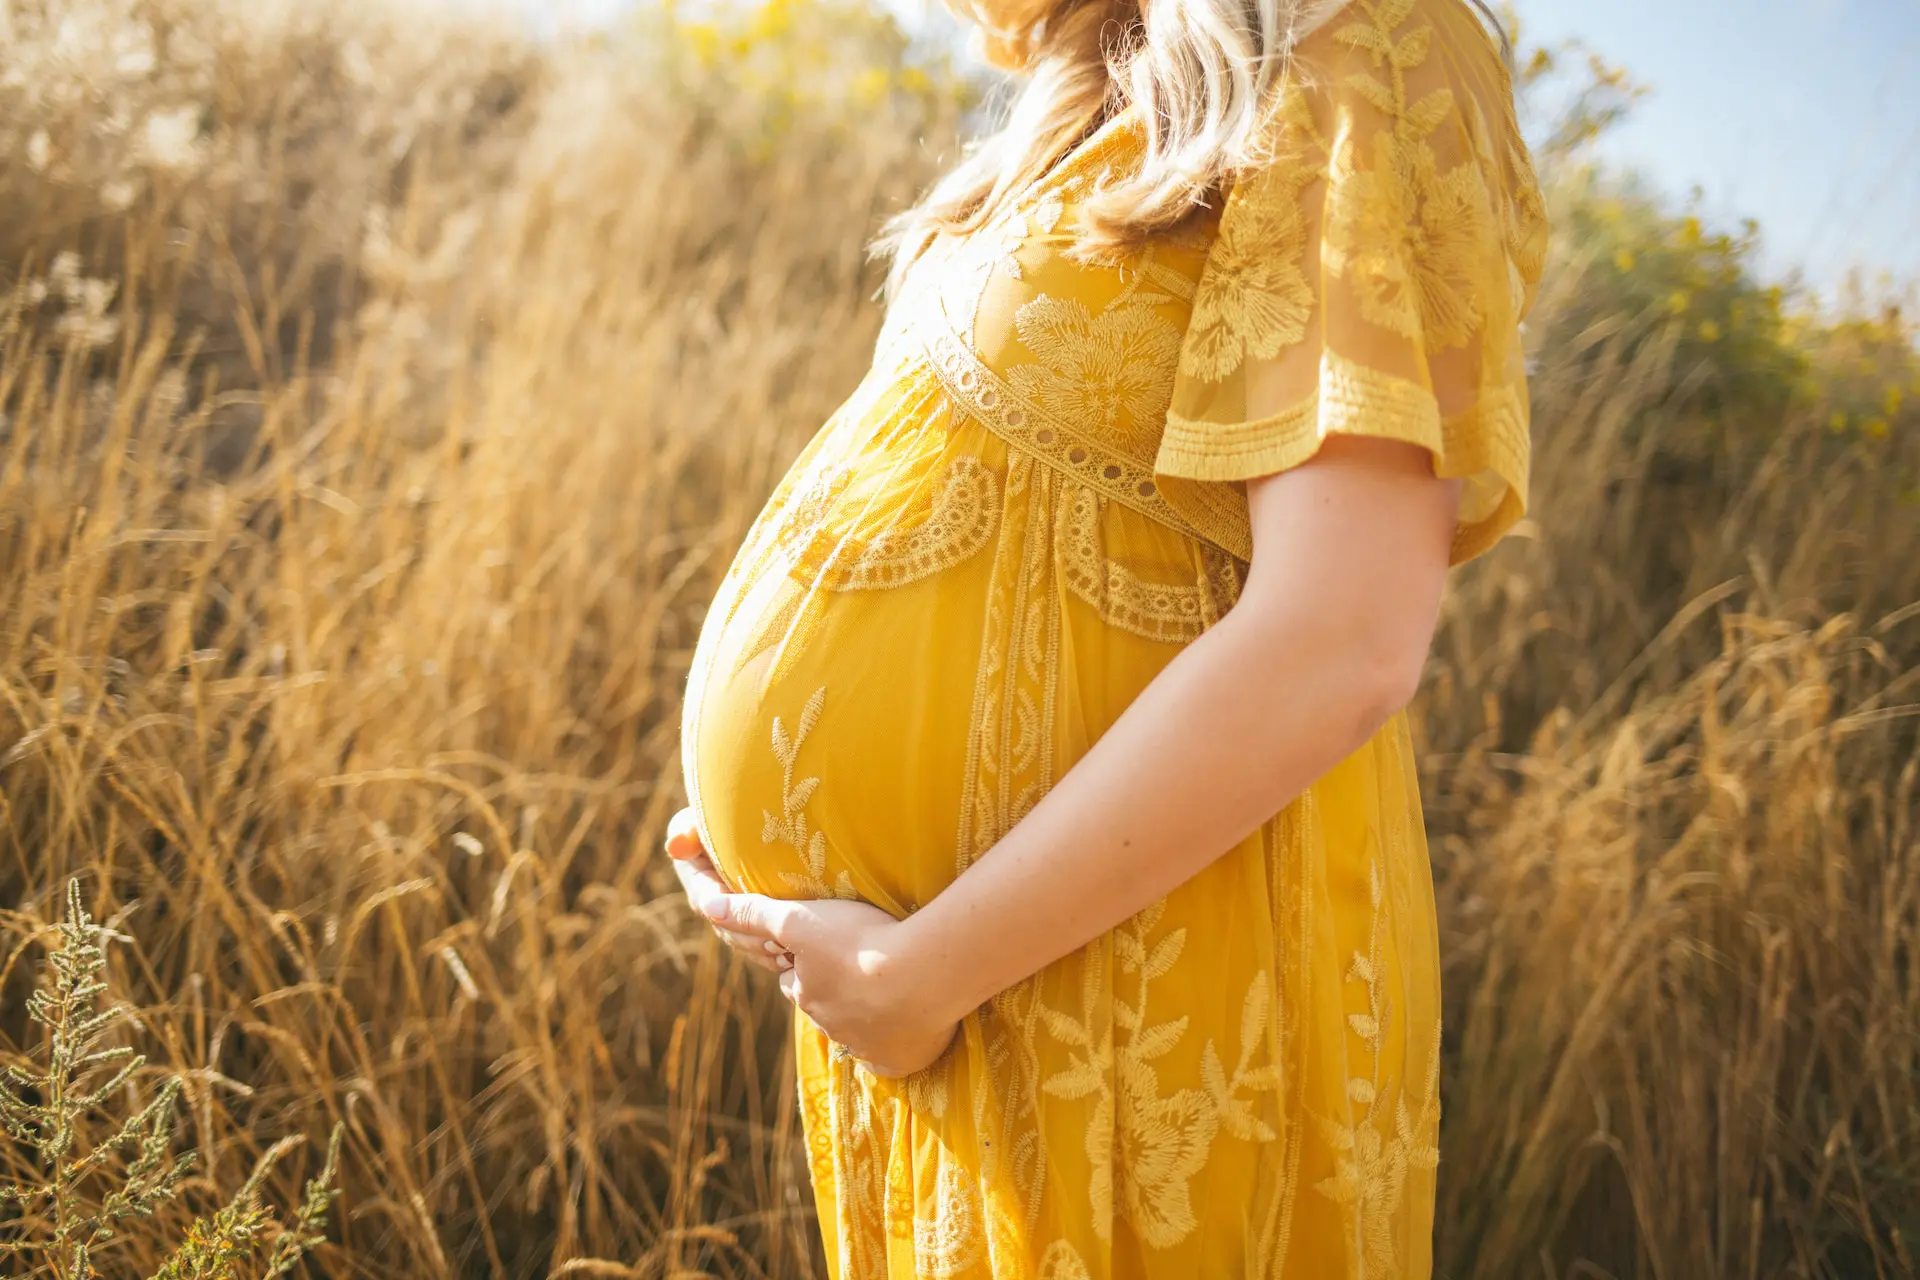 La gravidanza pone notevoli sfide al pavimento pelvico, essenziale per sostenere il peso dell'utero. La prevenzione primaria, il massaggio perineale e la riabilitazione post-partum sono cruciali per preservare la salute e la funzionalità di questa regione. Scopri come prenderti cura del tuo pavimento pelvico durante la gravidanza e nel periodo successivo al parto.